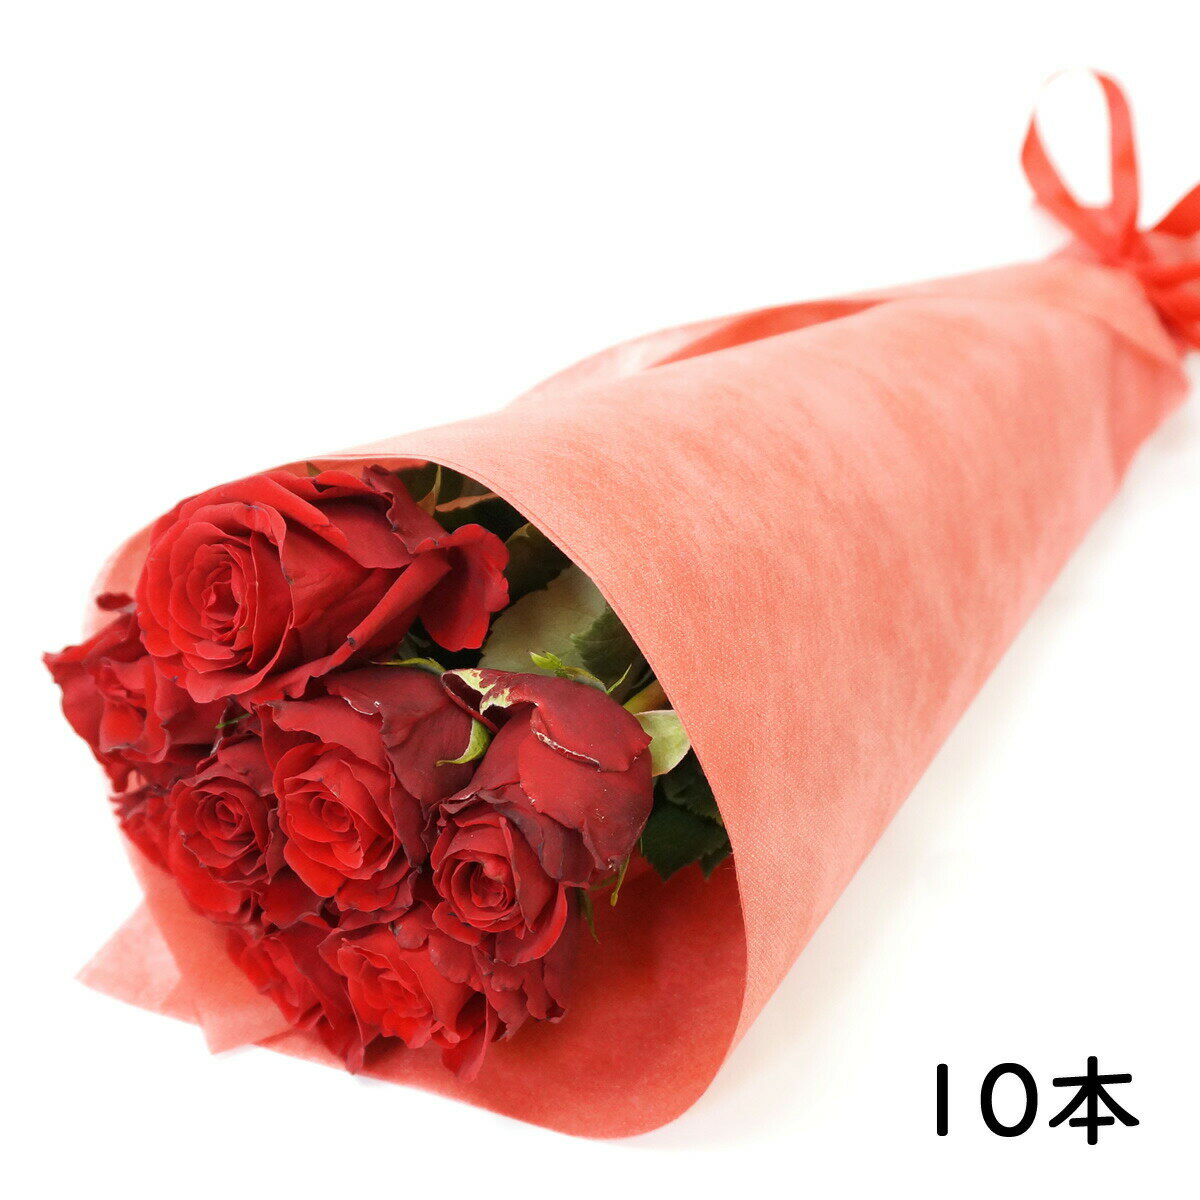 定番のバラを花束にしてお届けします。 本数：10本(赤) バラのサイズ：長さ約50〜60cm 産地：ケニアまたはエクアドル 商品サイズ：10本・・・10×50cm 付属品：ラッピングペーパー、リボン、メッセージカード ※メッセージ（日本語20字以内・英語15単語以内）がつけられます。 ※写真はイメージで実際配達される花束とは異なります。 ■お届けについて お届け日の指定は注文日より3日後以降（土日祝日除く）となります。 大切なお届けの場合は前日のお届けをお勧めします。 配達方法：宅配便 ▲下記の地域には配達できません。 北海道(利尻島・礼文島)・東京都(伊豆諸島)・鹿児島県(大島郡・名瀬市・西之表島・鹿児島郡(三島村・十島村)・熊毛郡・薩摩郡(上瓶村・里村・下瓶村・鹿島村)・沖縄県全域 ※G-Callショッピングにて他の商品と一緒にご購入の場合、別途送料がかかる場合があります。その際はご注文後ご連絡いたします。